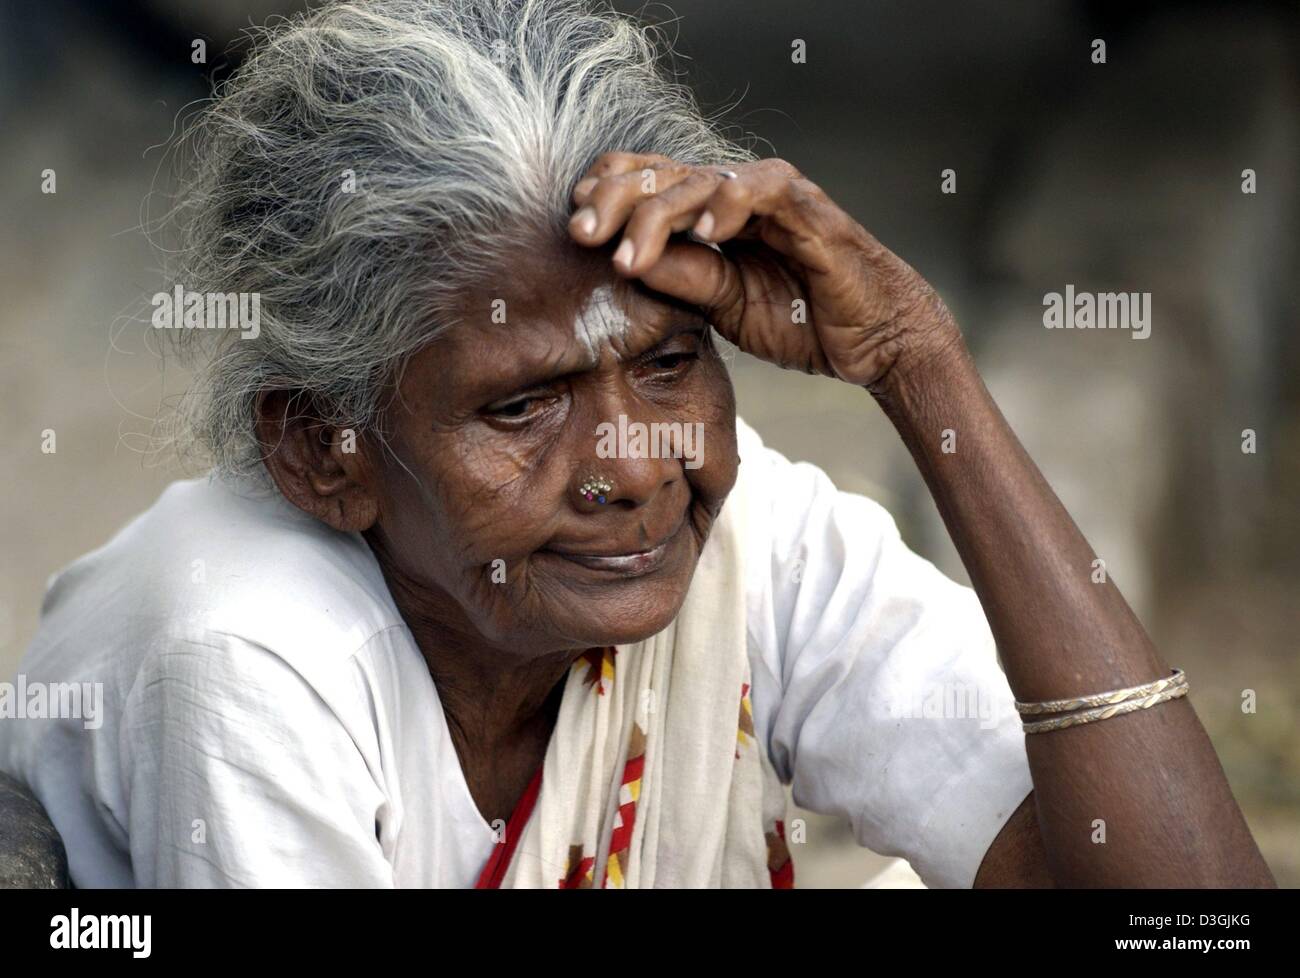 (Dpa) - eine Frau mit einem religiösen hinduistischen Schild an Stirn und Nase piercing sitzt auf einer Straße in Chennai, früher bekannt als Madras, Indien, 21. Juli 2004. Die Stadt liegt im Süden von Indien wurde von den Portugiesen im 16. Jahrhundert gegründet. Chennai ist heute die viertgrößte Stadt in Indien mit 7 Millionen Einwohnern. Mehr als ein Viertel der Stadt Menschen leben in Slums Stockfoto